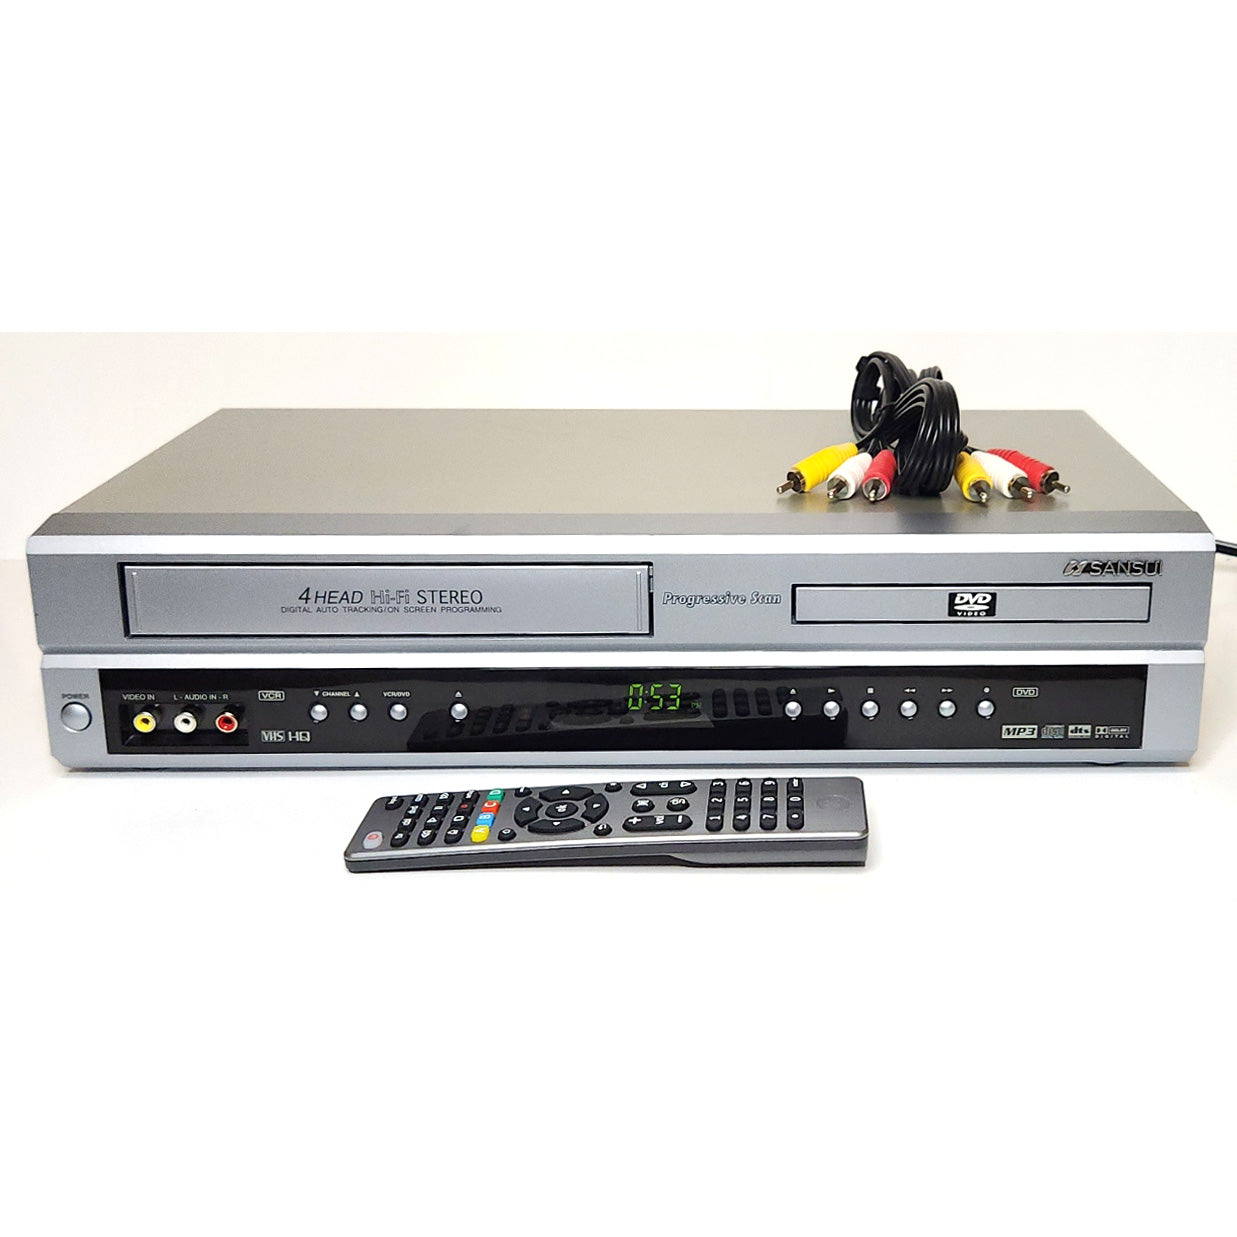 Sansui VRDVD4001 VCR/DVD Player Combo